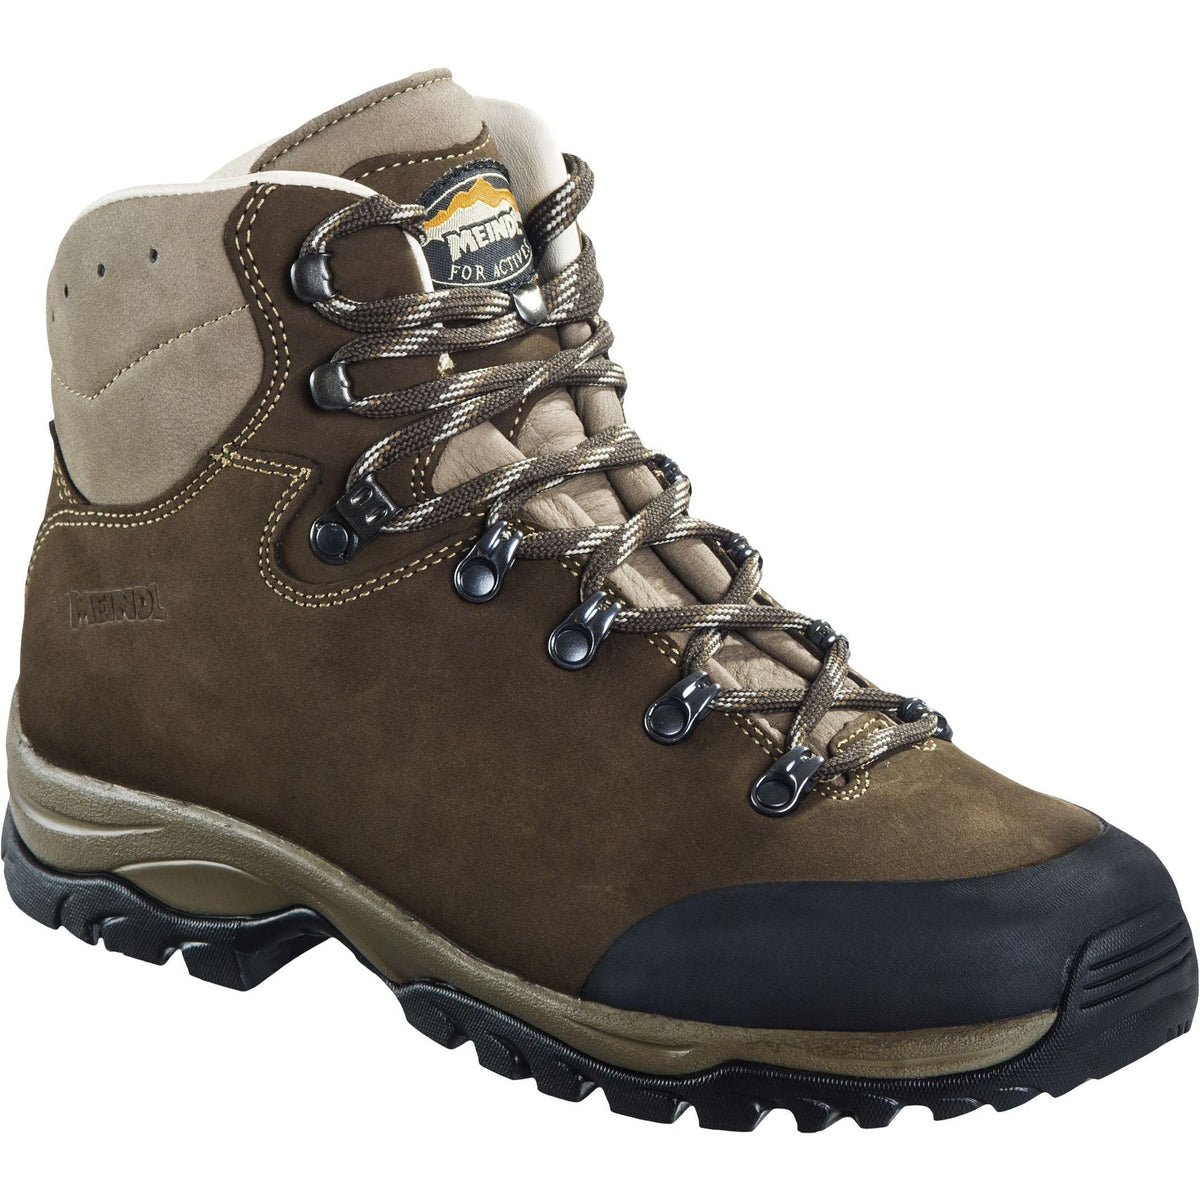 Meindl Jersey Pro Walking Boots - Dark Brown